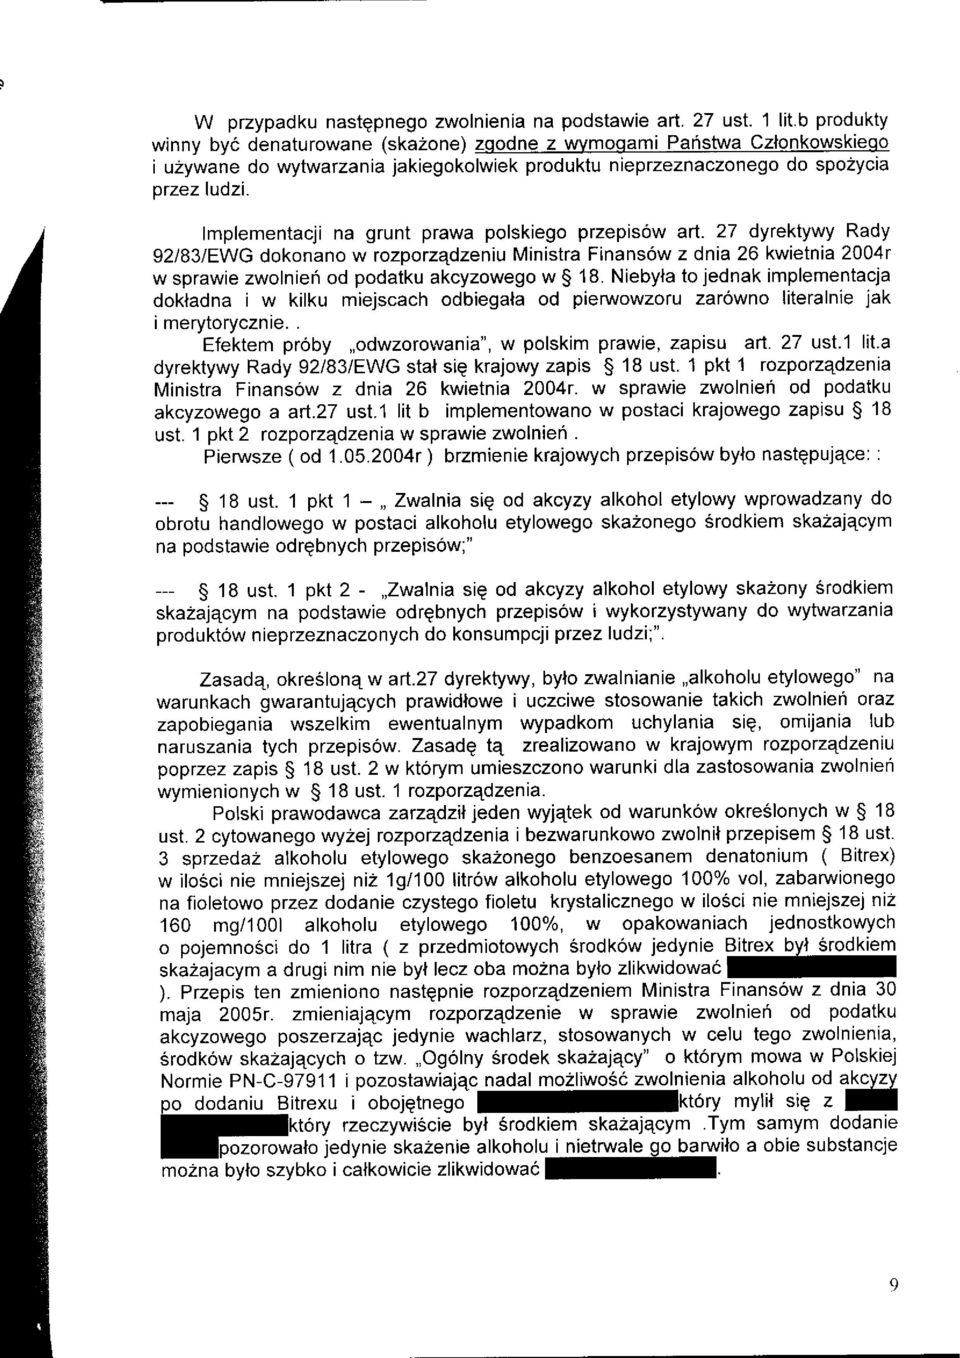 lmplementacji na grunt prawa polskiego przepis6w art. 27 dyrektywy Rady 92I83/EWG dokonano w rozpotzqdzeniu Ministra Finans6w z dnia 26 kwietnia 2004r w sprawie zwolnieri od podatku akcyzowego w $ 18.